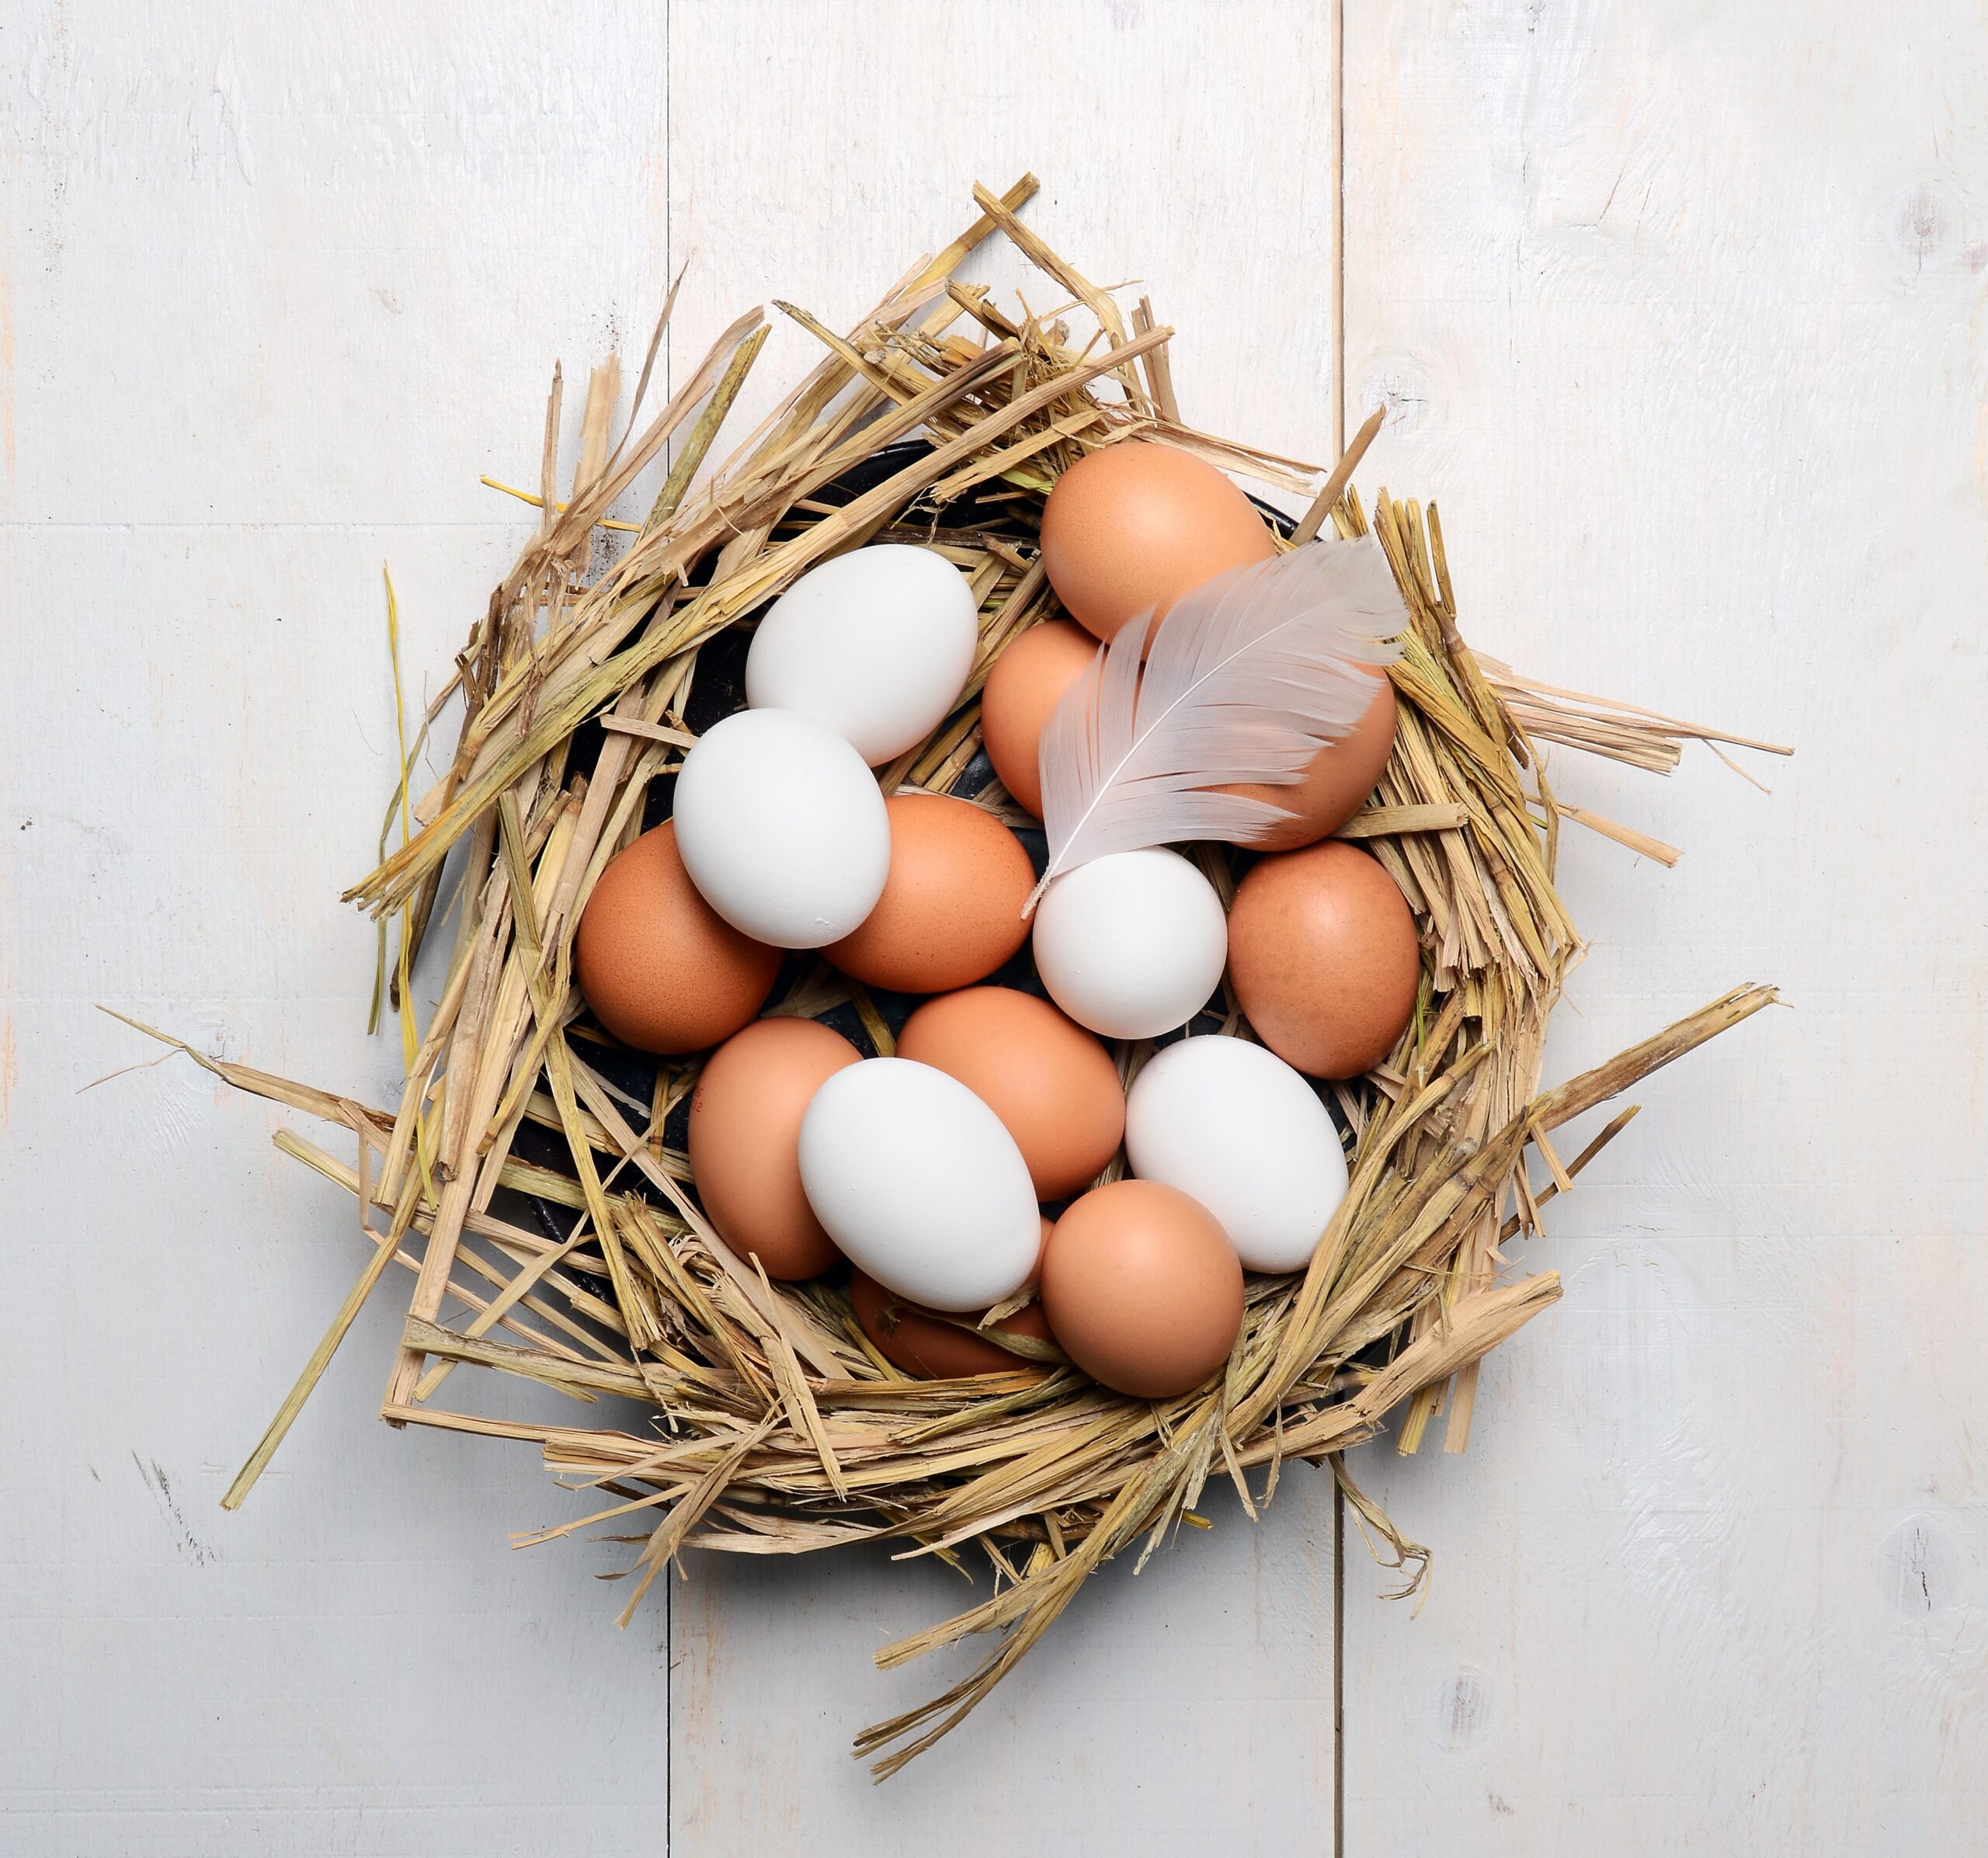 흰색 달걀이 건강에 좋다는데…과연 그럴까?